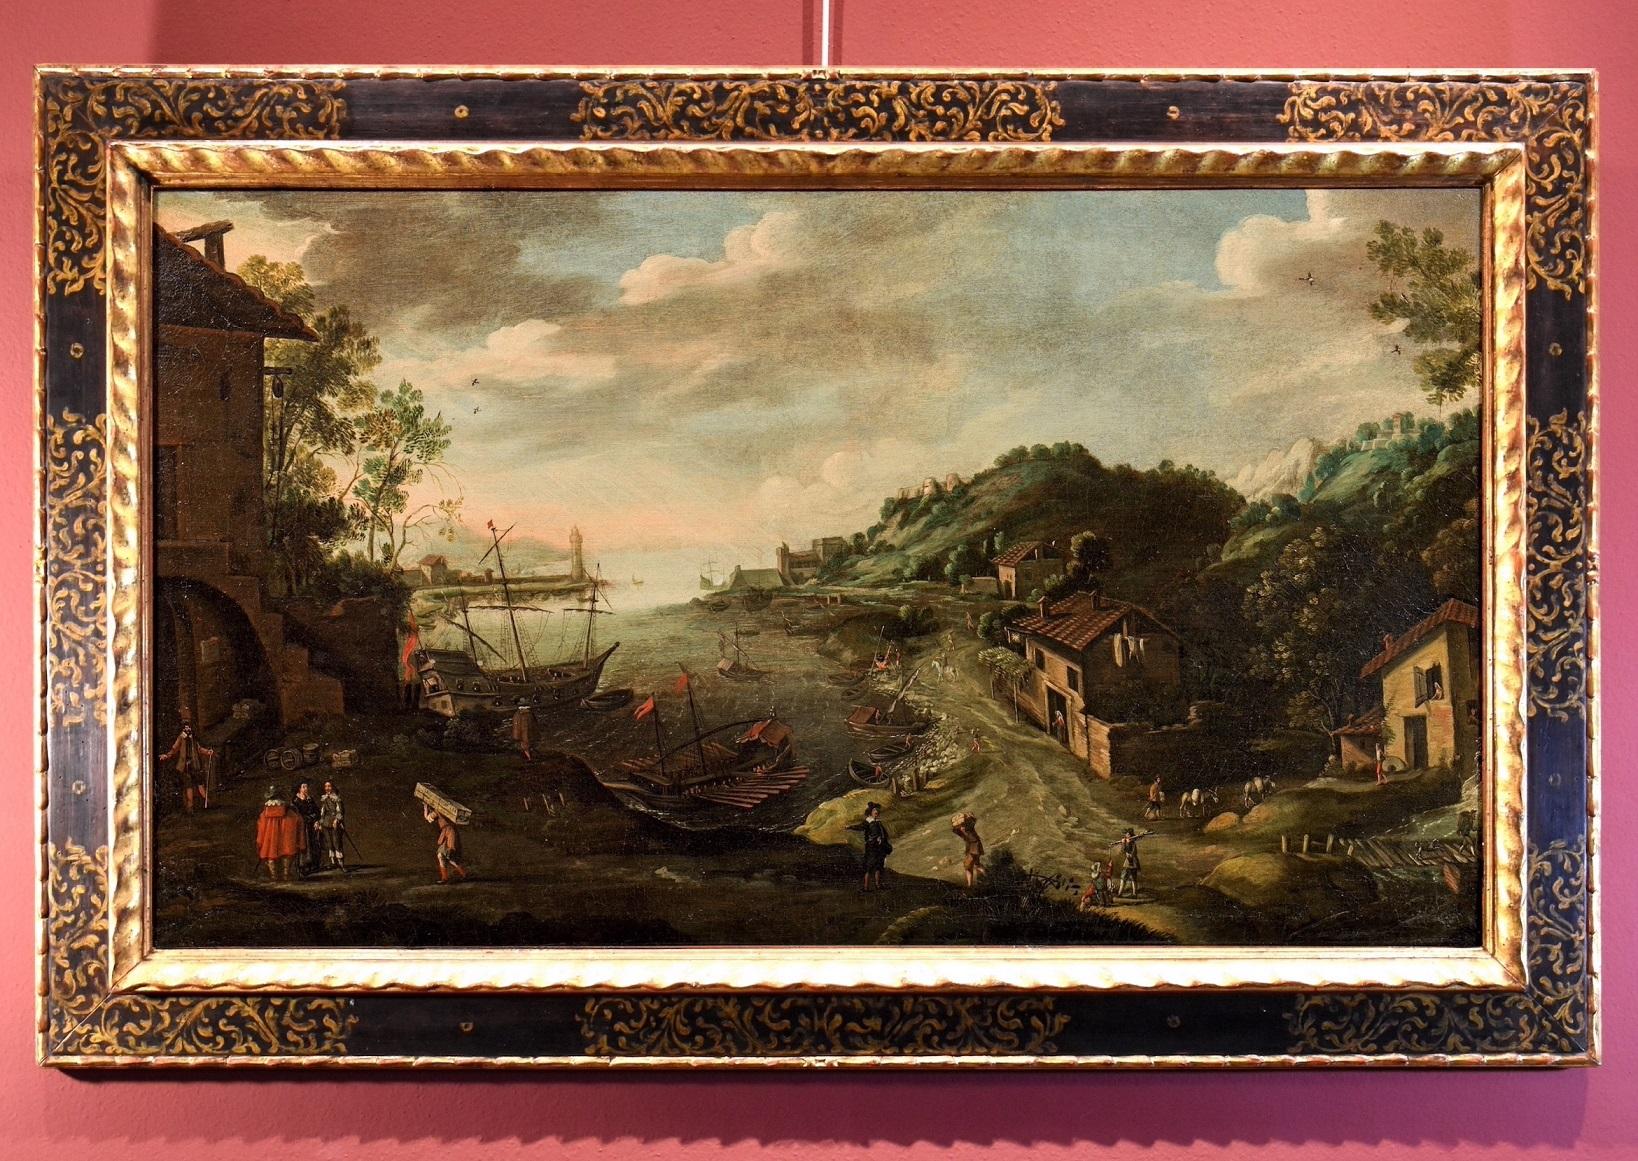 Meereslandschaft Valckenborch Gemälde Öl auf Leinwand Alter Meister 17. Jahrhundert Flämisch – Painting von Marten van Valckenborch (Belgium 1535 - Frankfurt 1612)